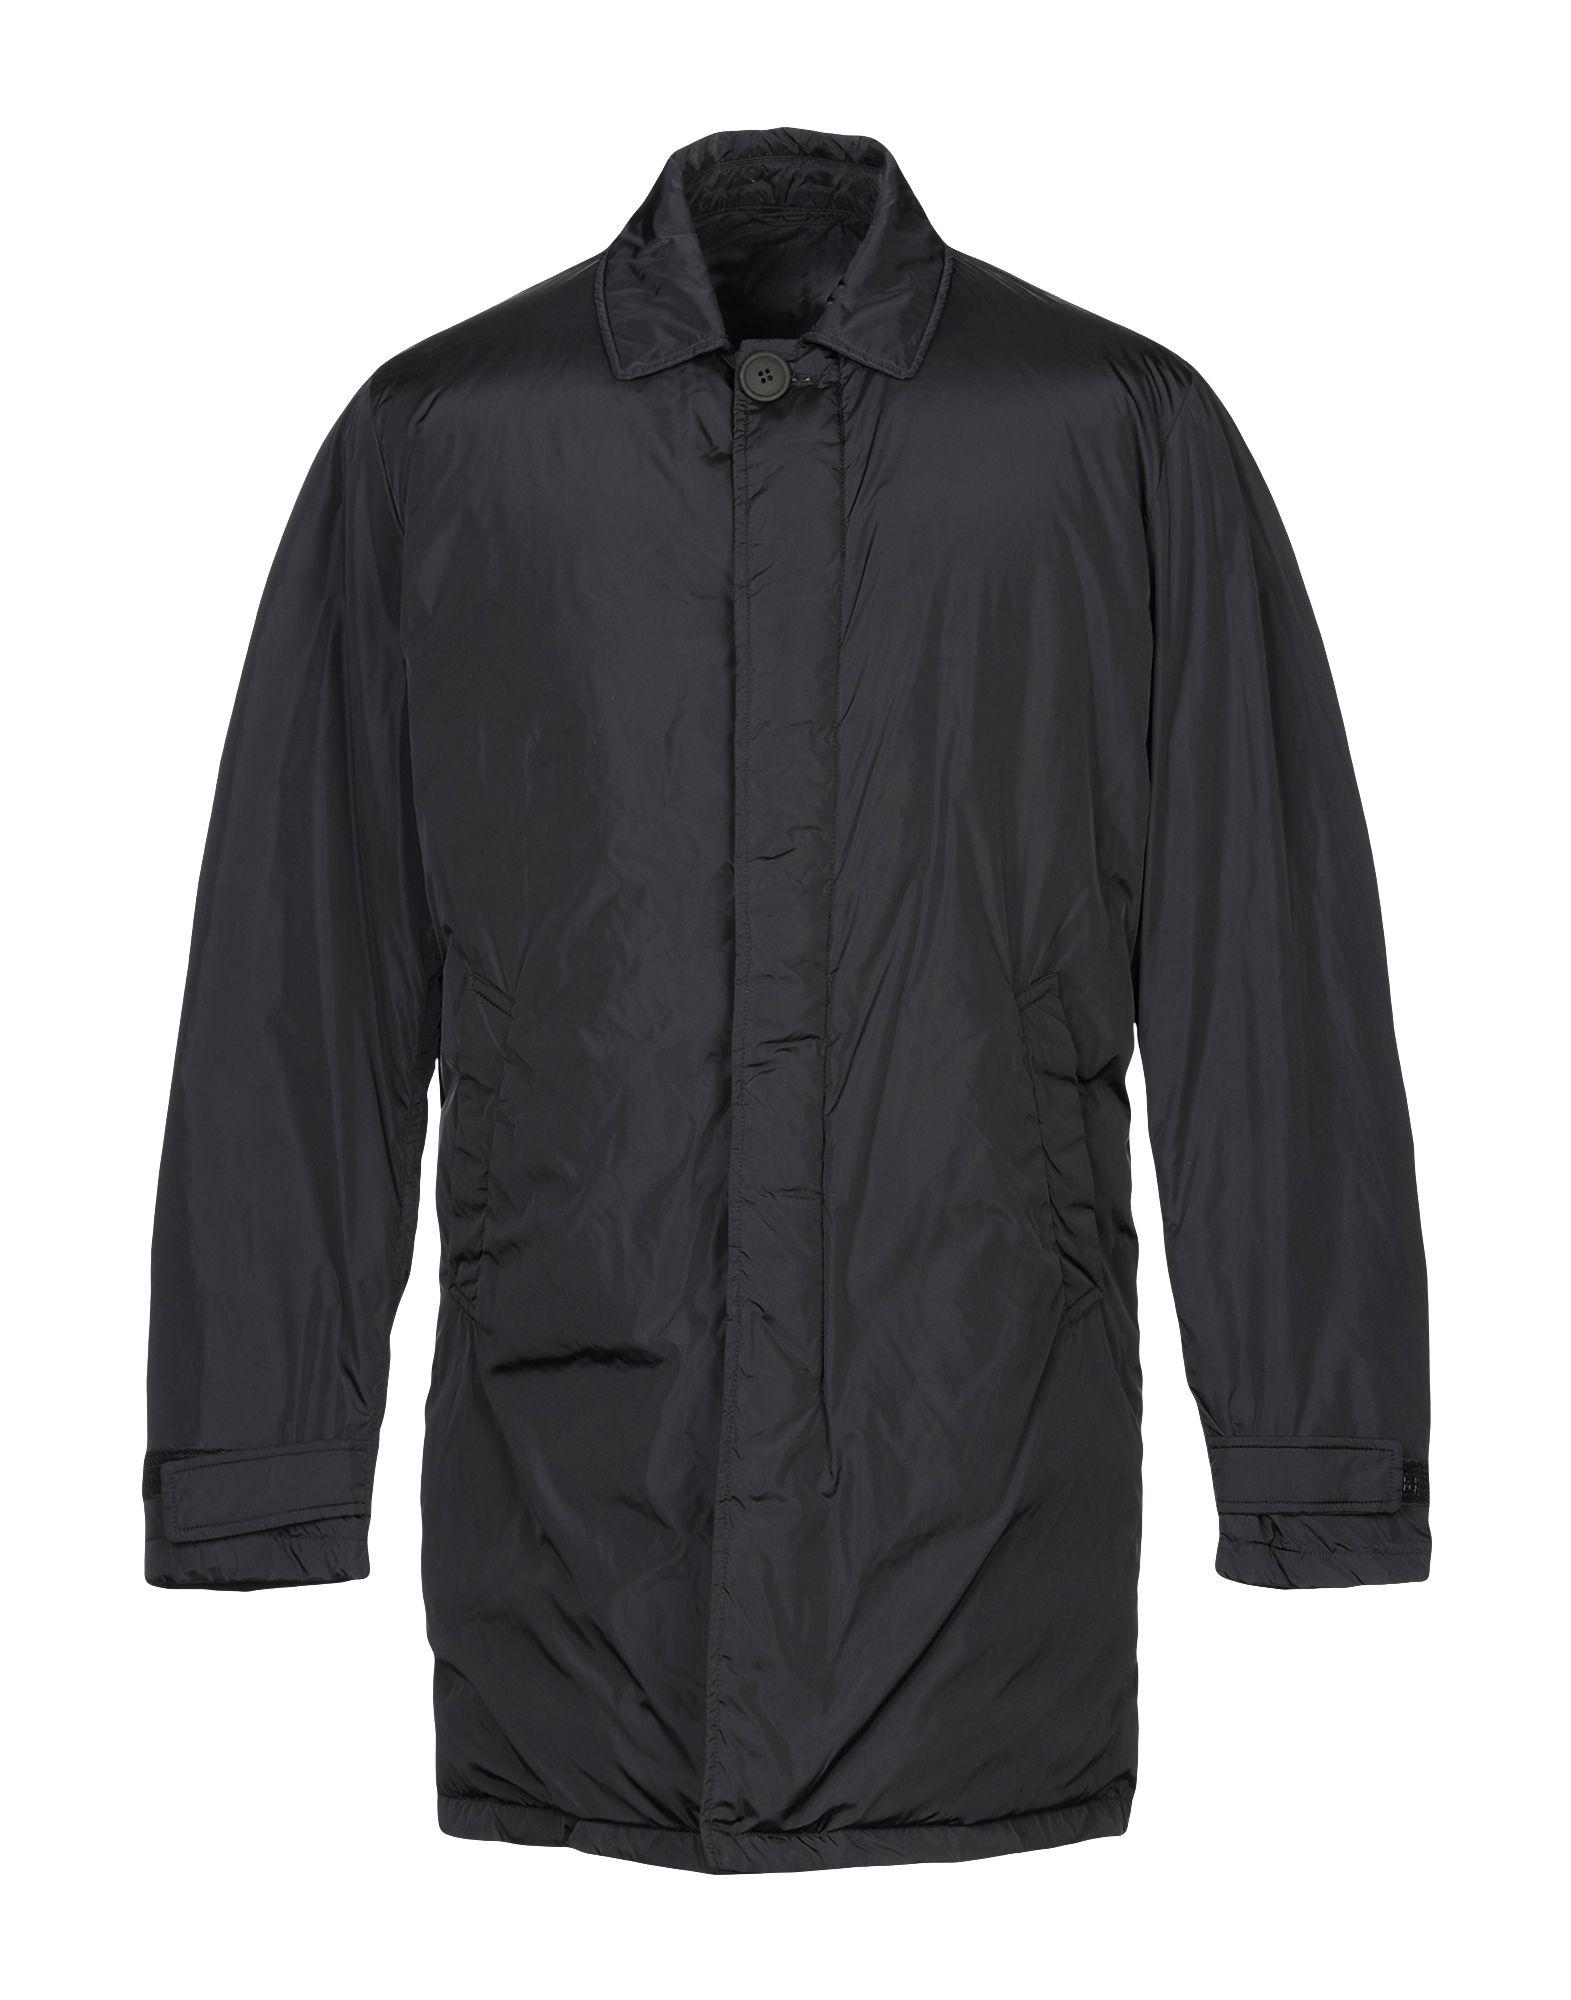 Add Down Jacket in Black for Men - Lyst